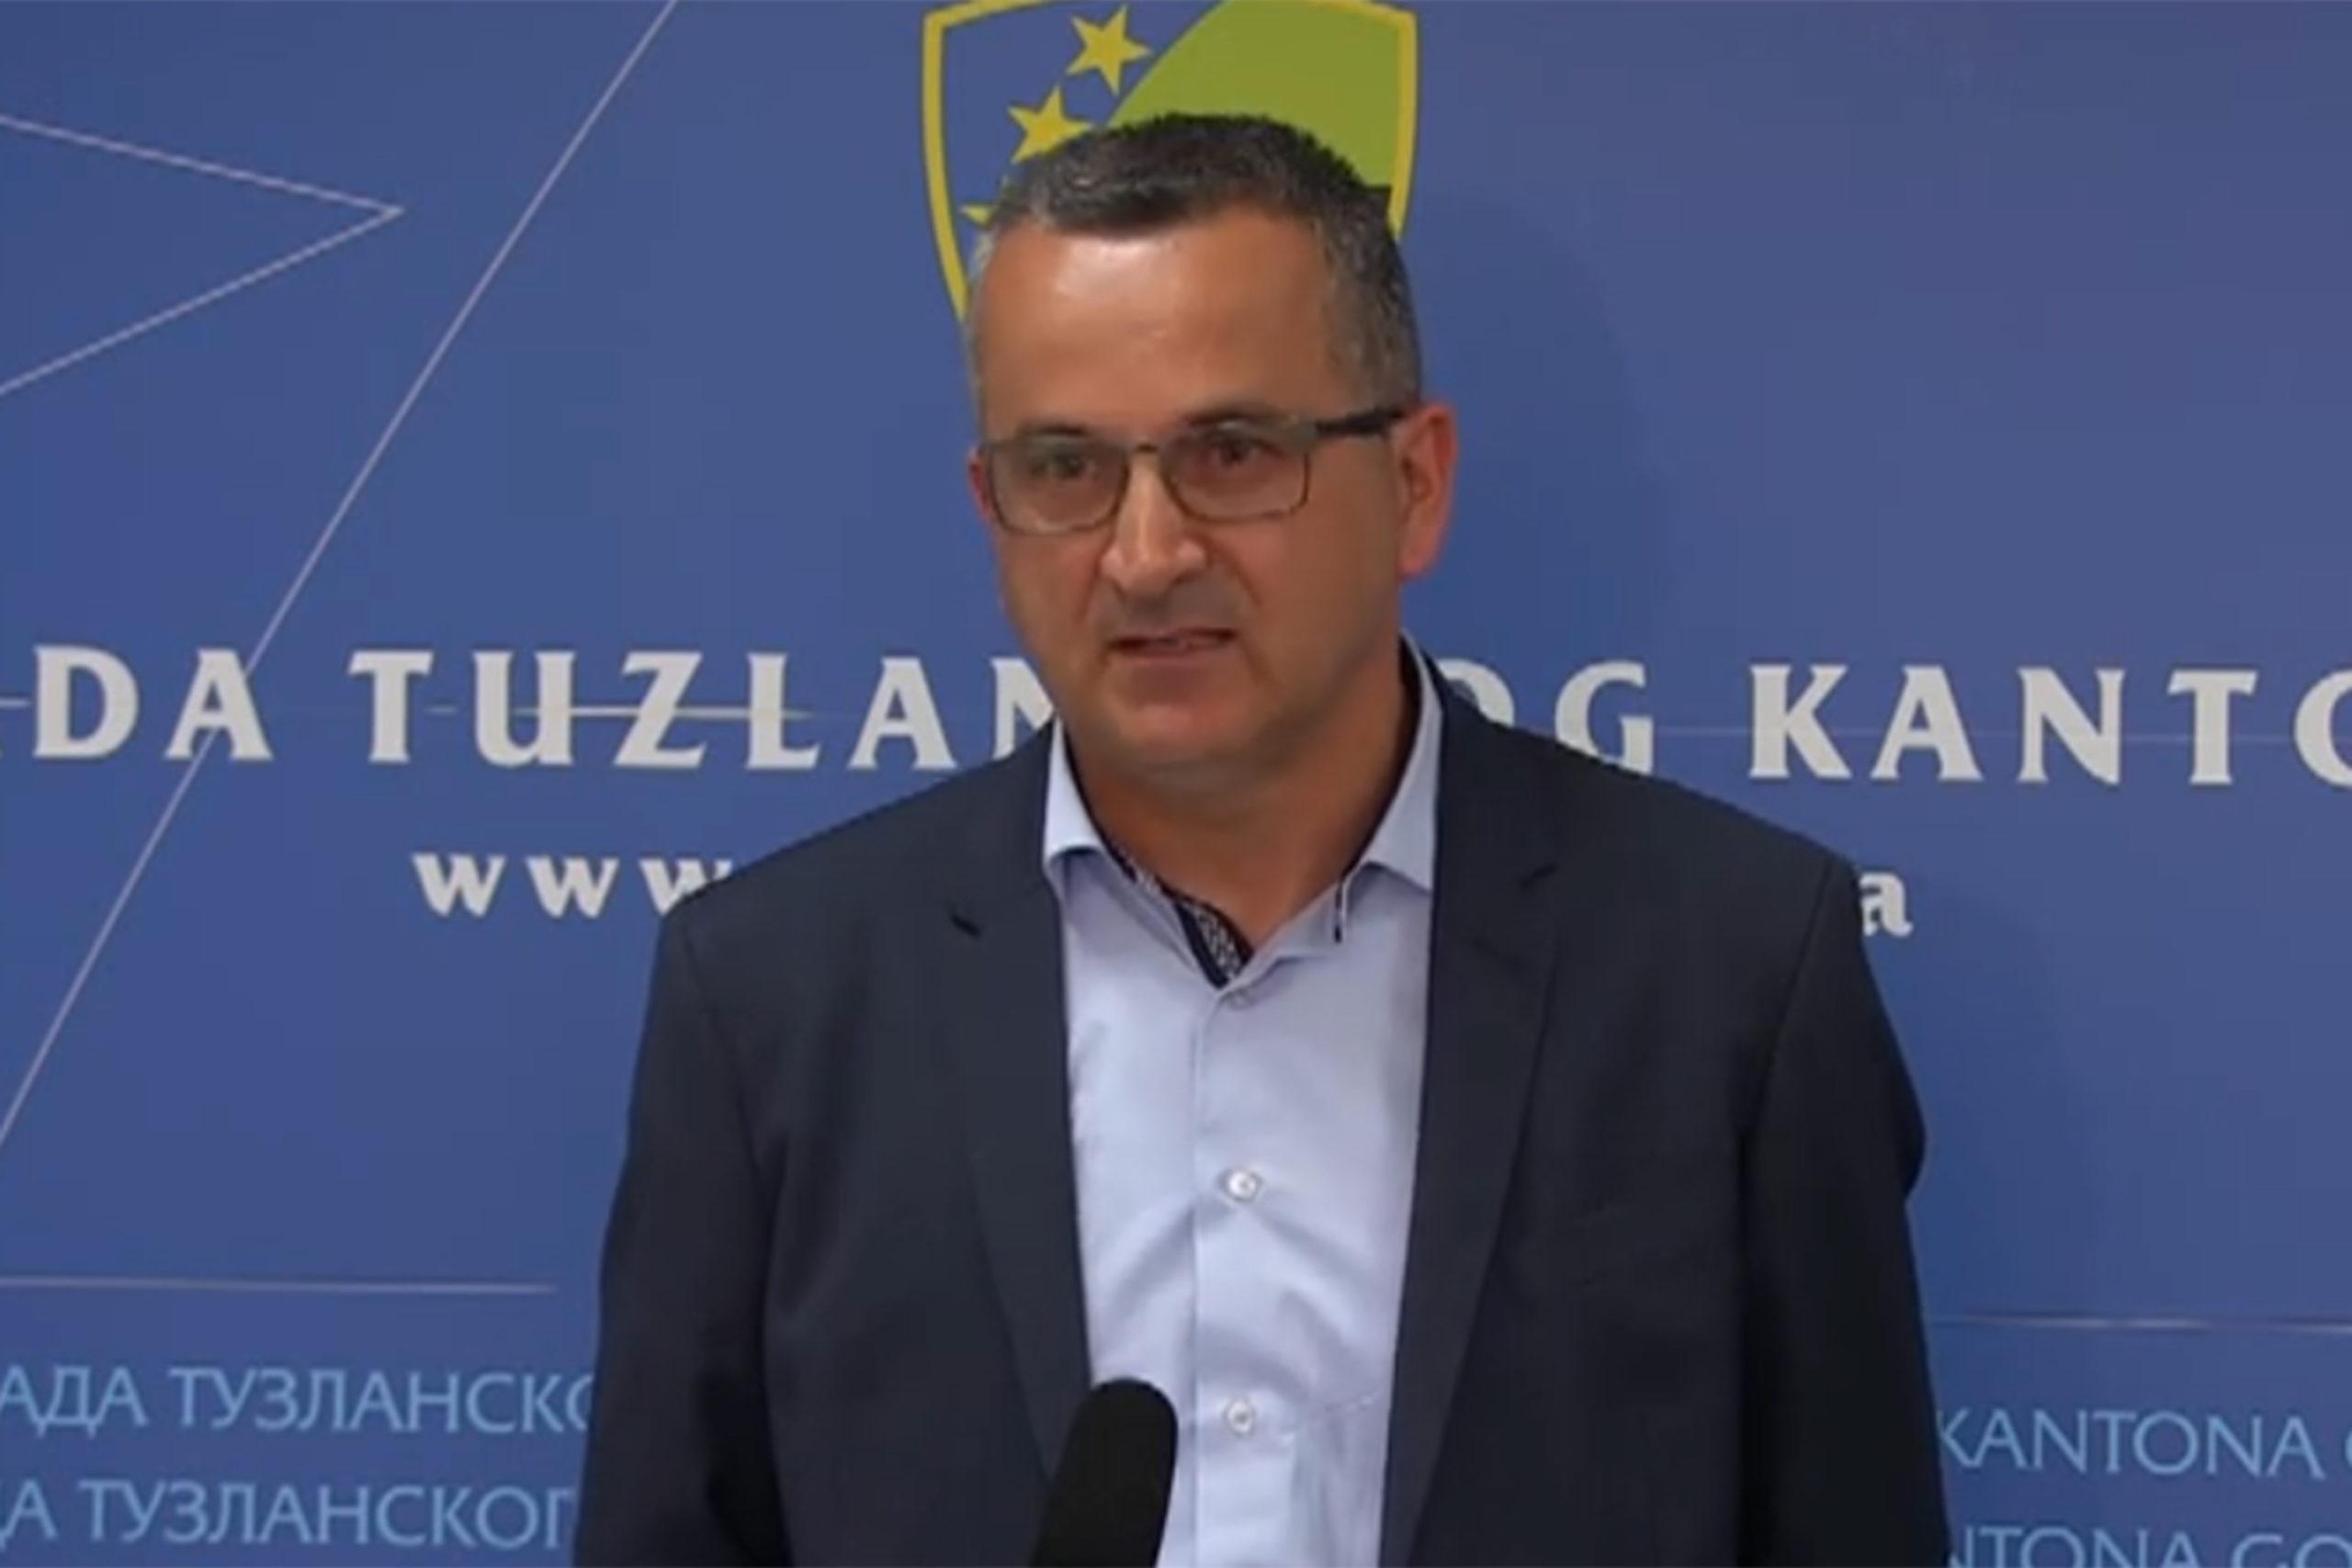 Bivši ministar MUP-a TK Sulejman Brkić ponovo osuđen na dvije godine zatvora